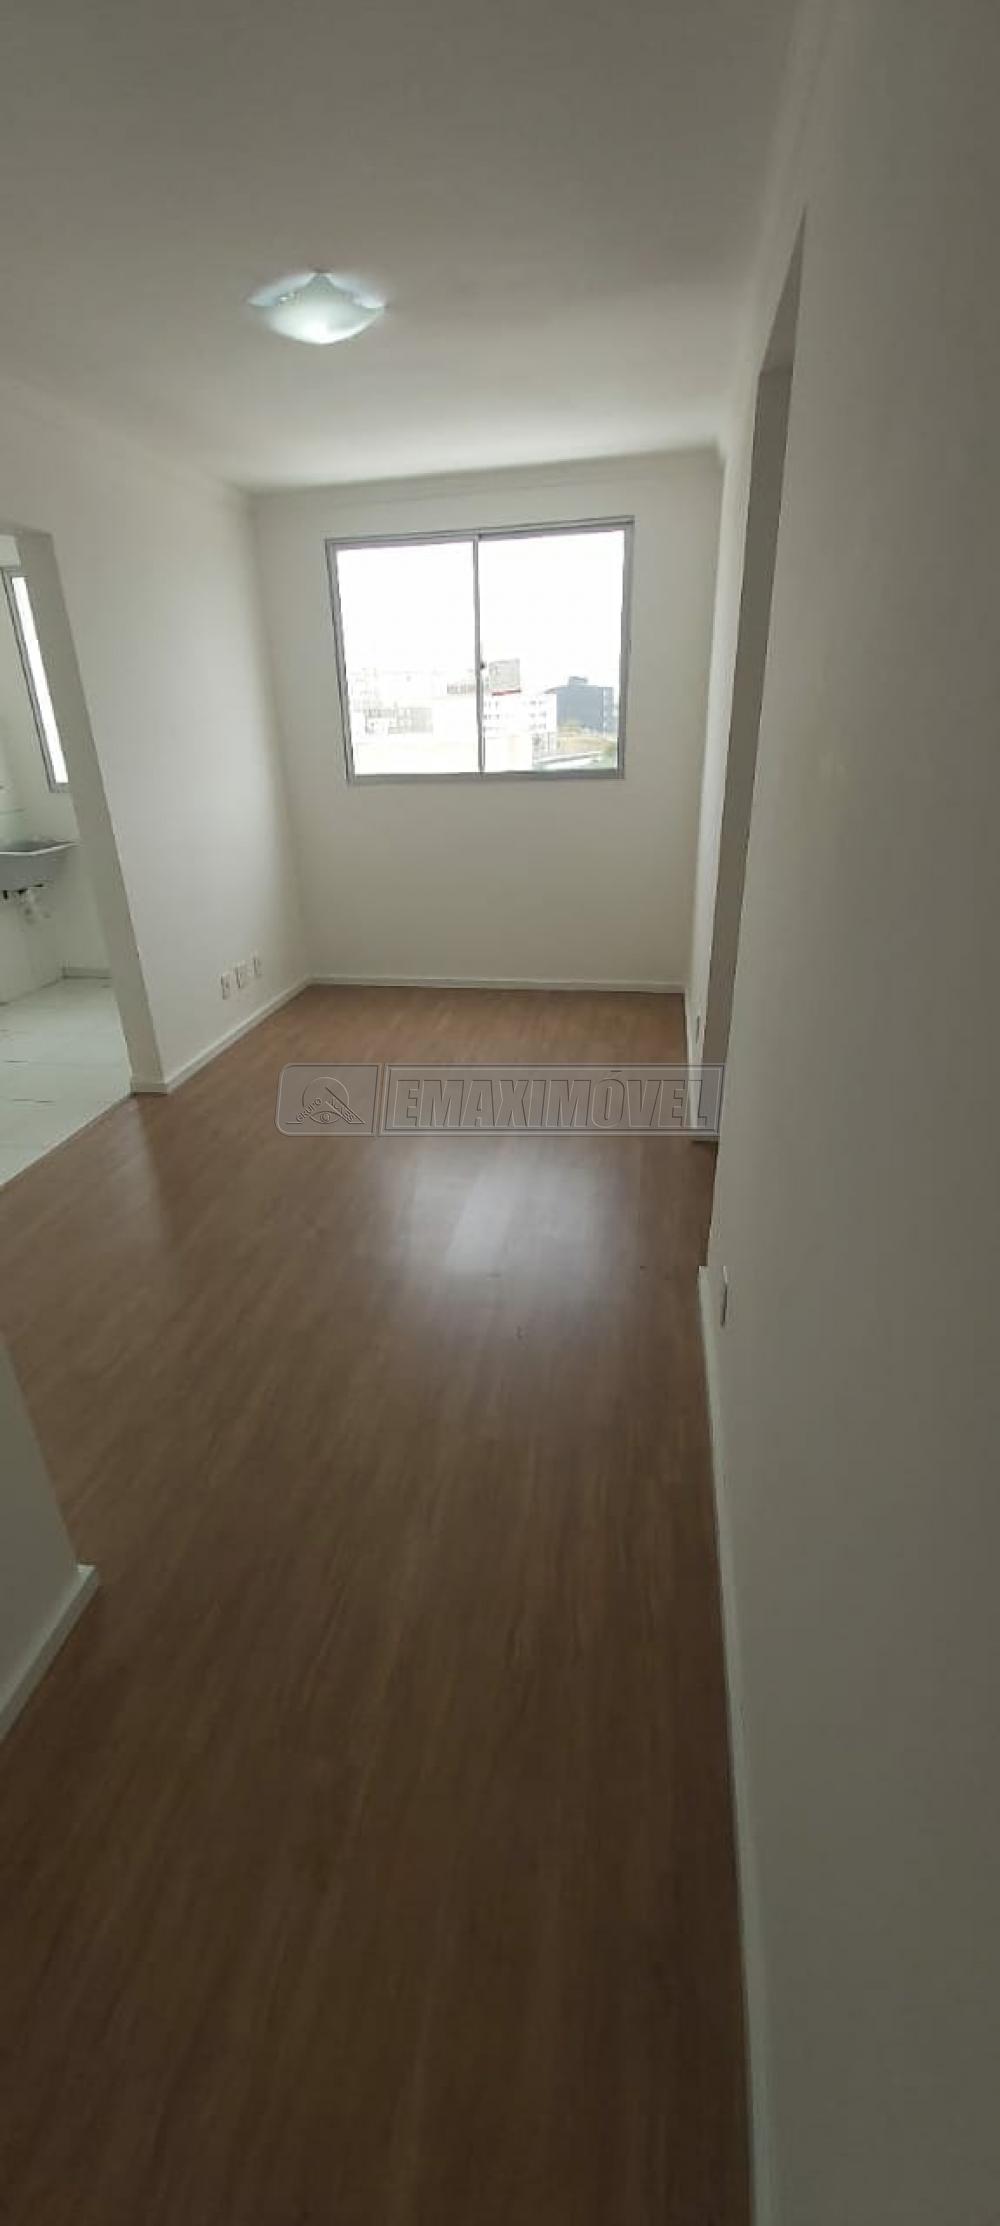 Comprar Apartamento / Padrão em Votorantim R$ 145.000,00 - Foto 1